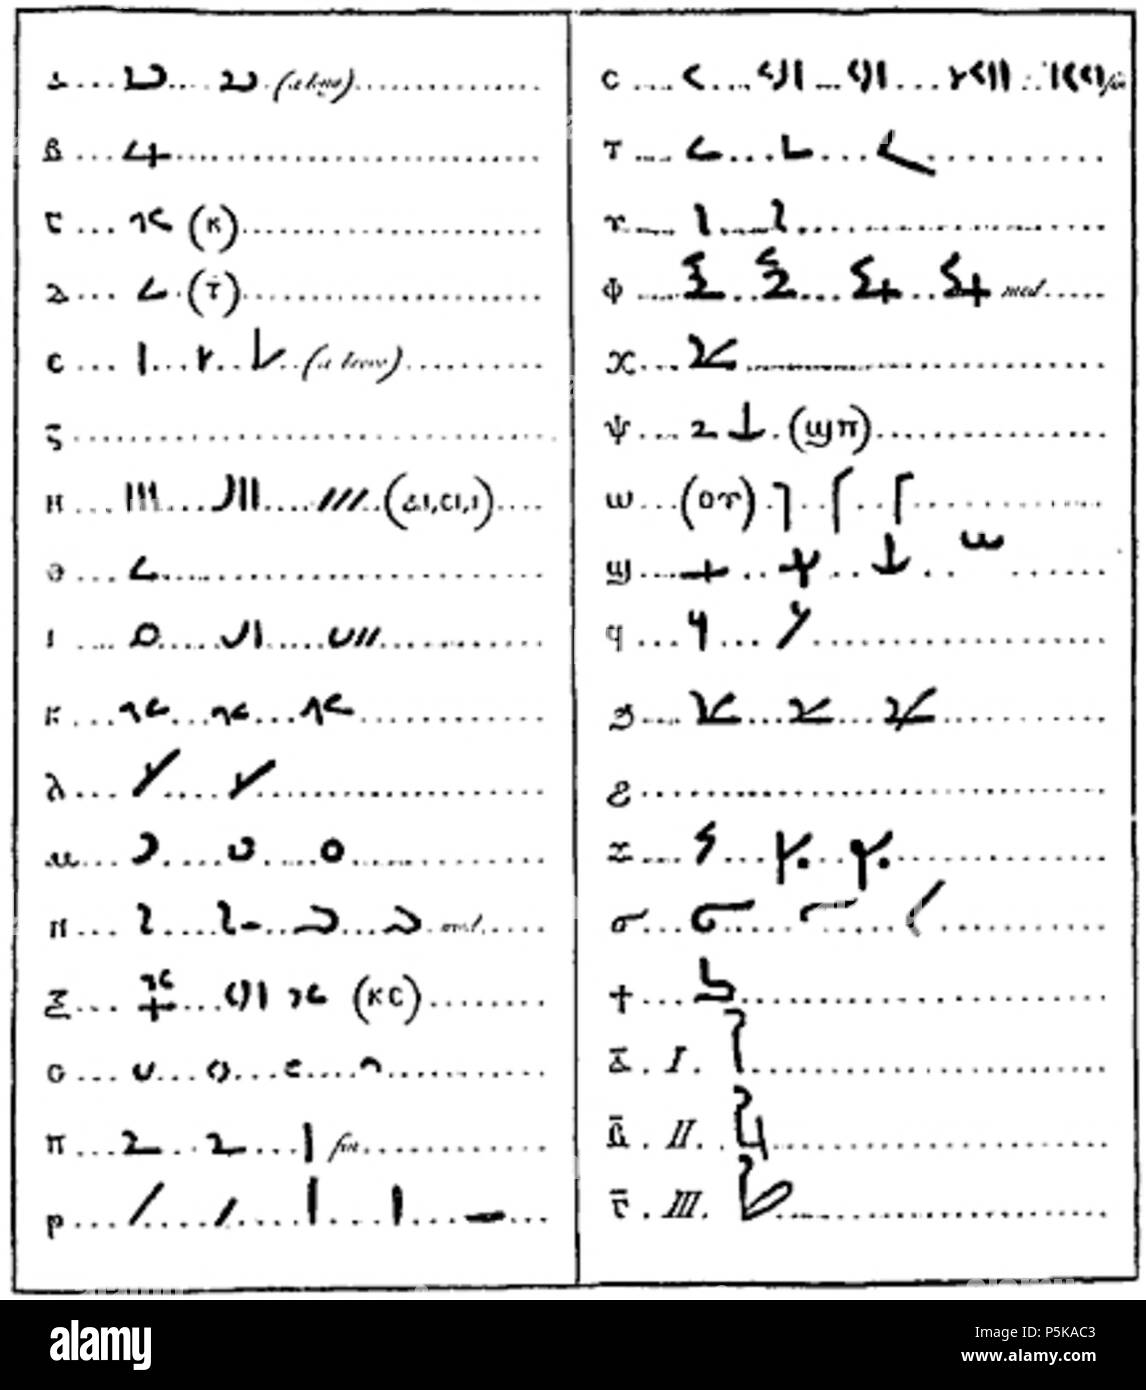 N/A. Inglese: Tentativo di un alfabeto di Egiziani Demotic script e il loro alfabeto copto equivalenti . 1802. J. D. Acurblad 71 Acurblad Foto Stock